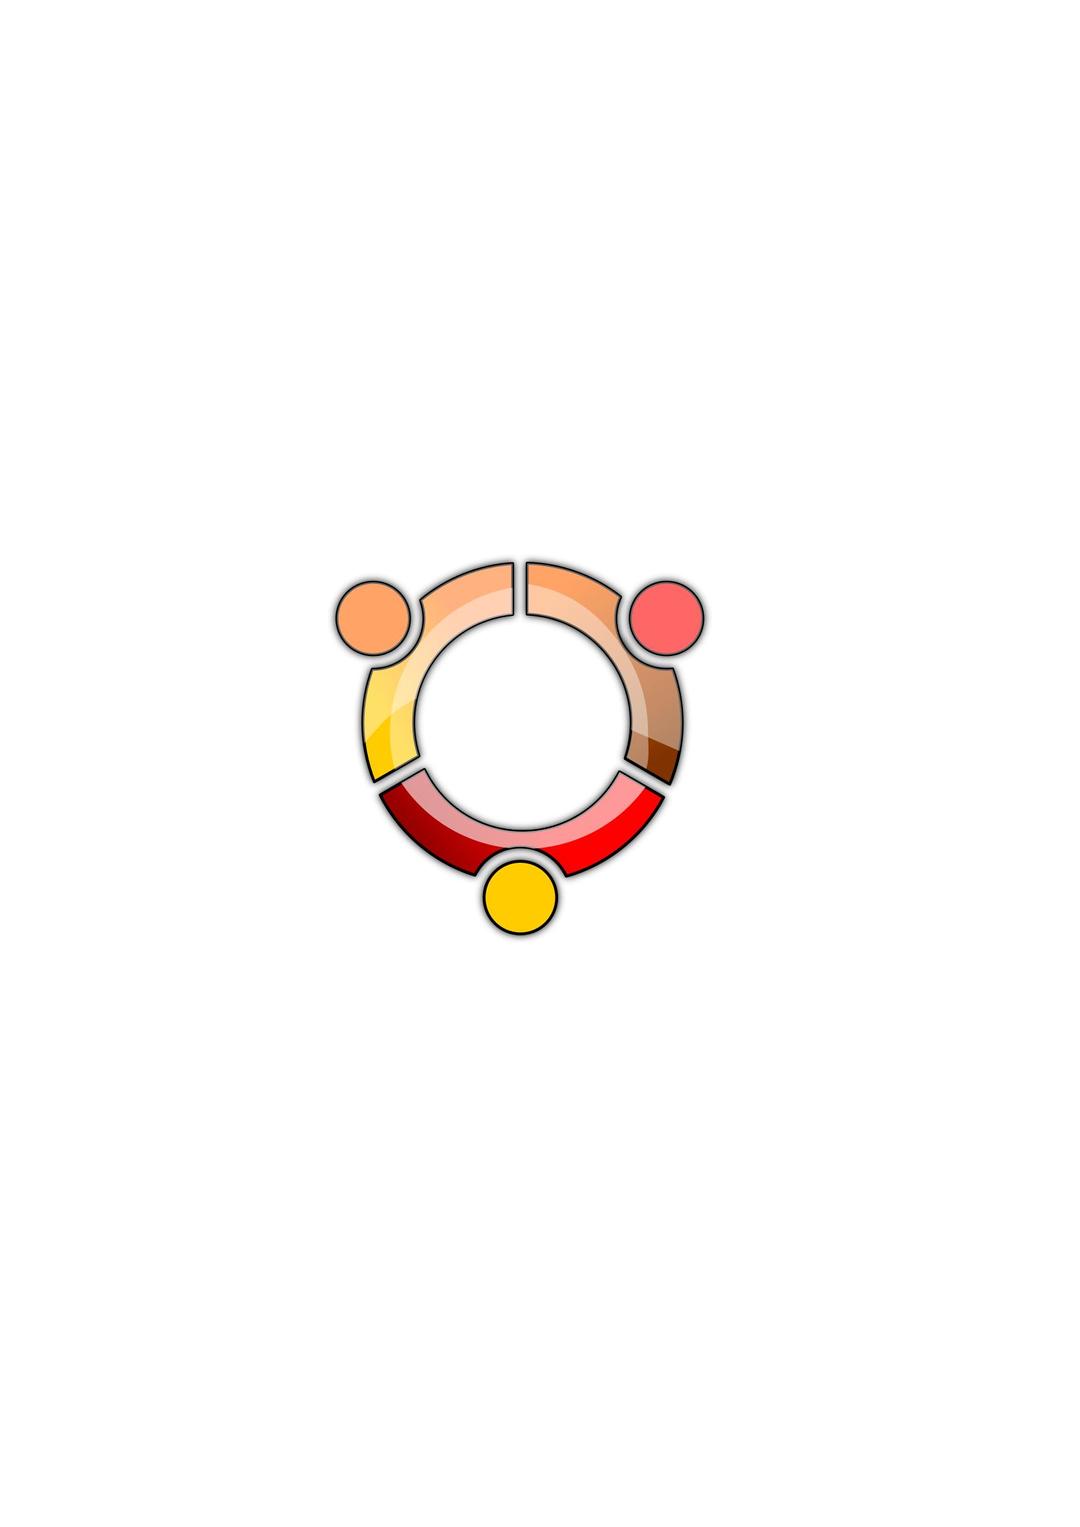 Ubuntu Logo png transparent